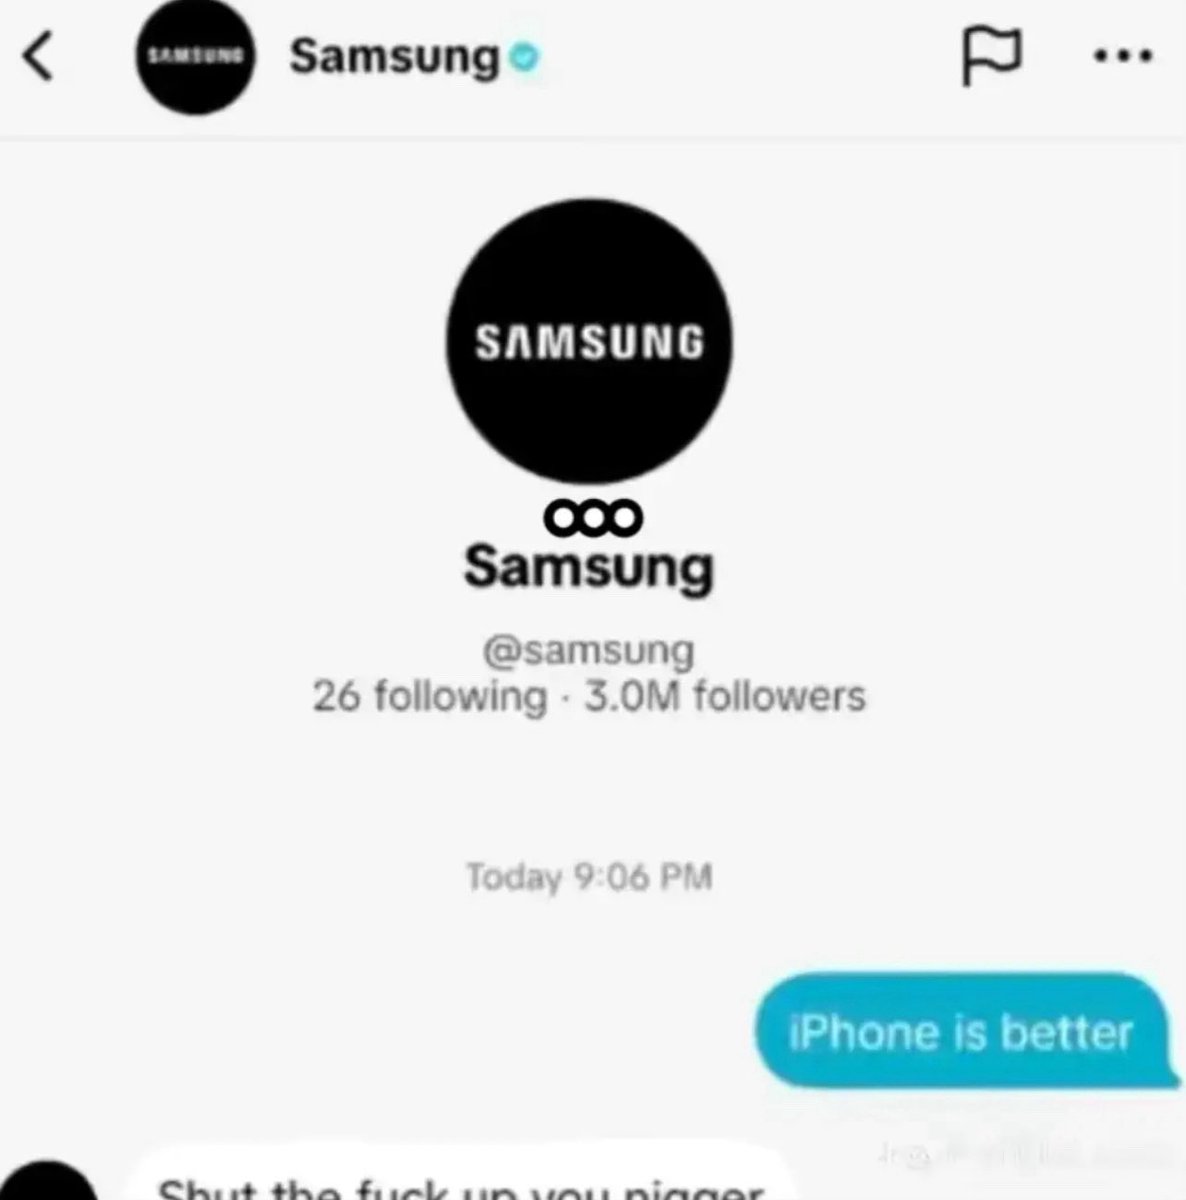 Okay Samsung